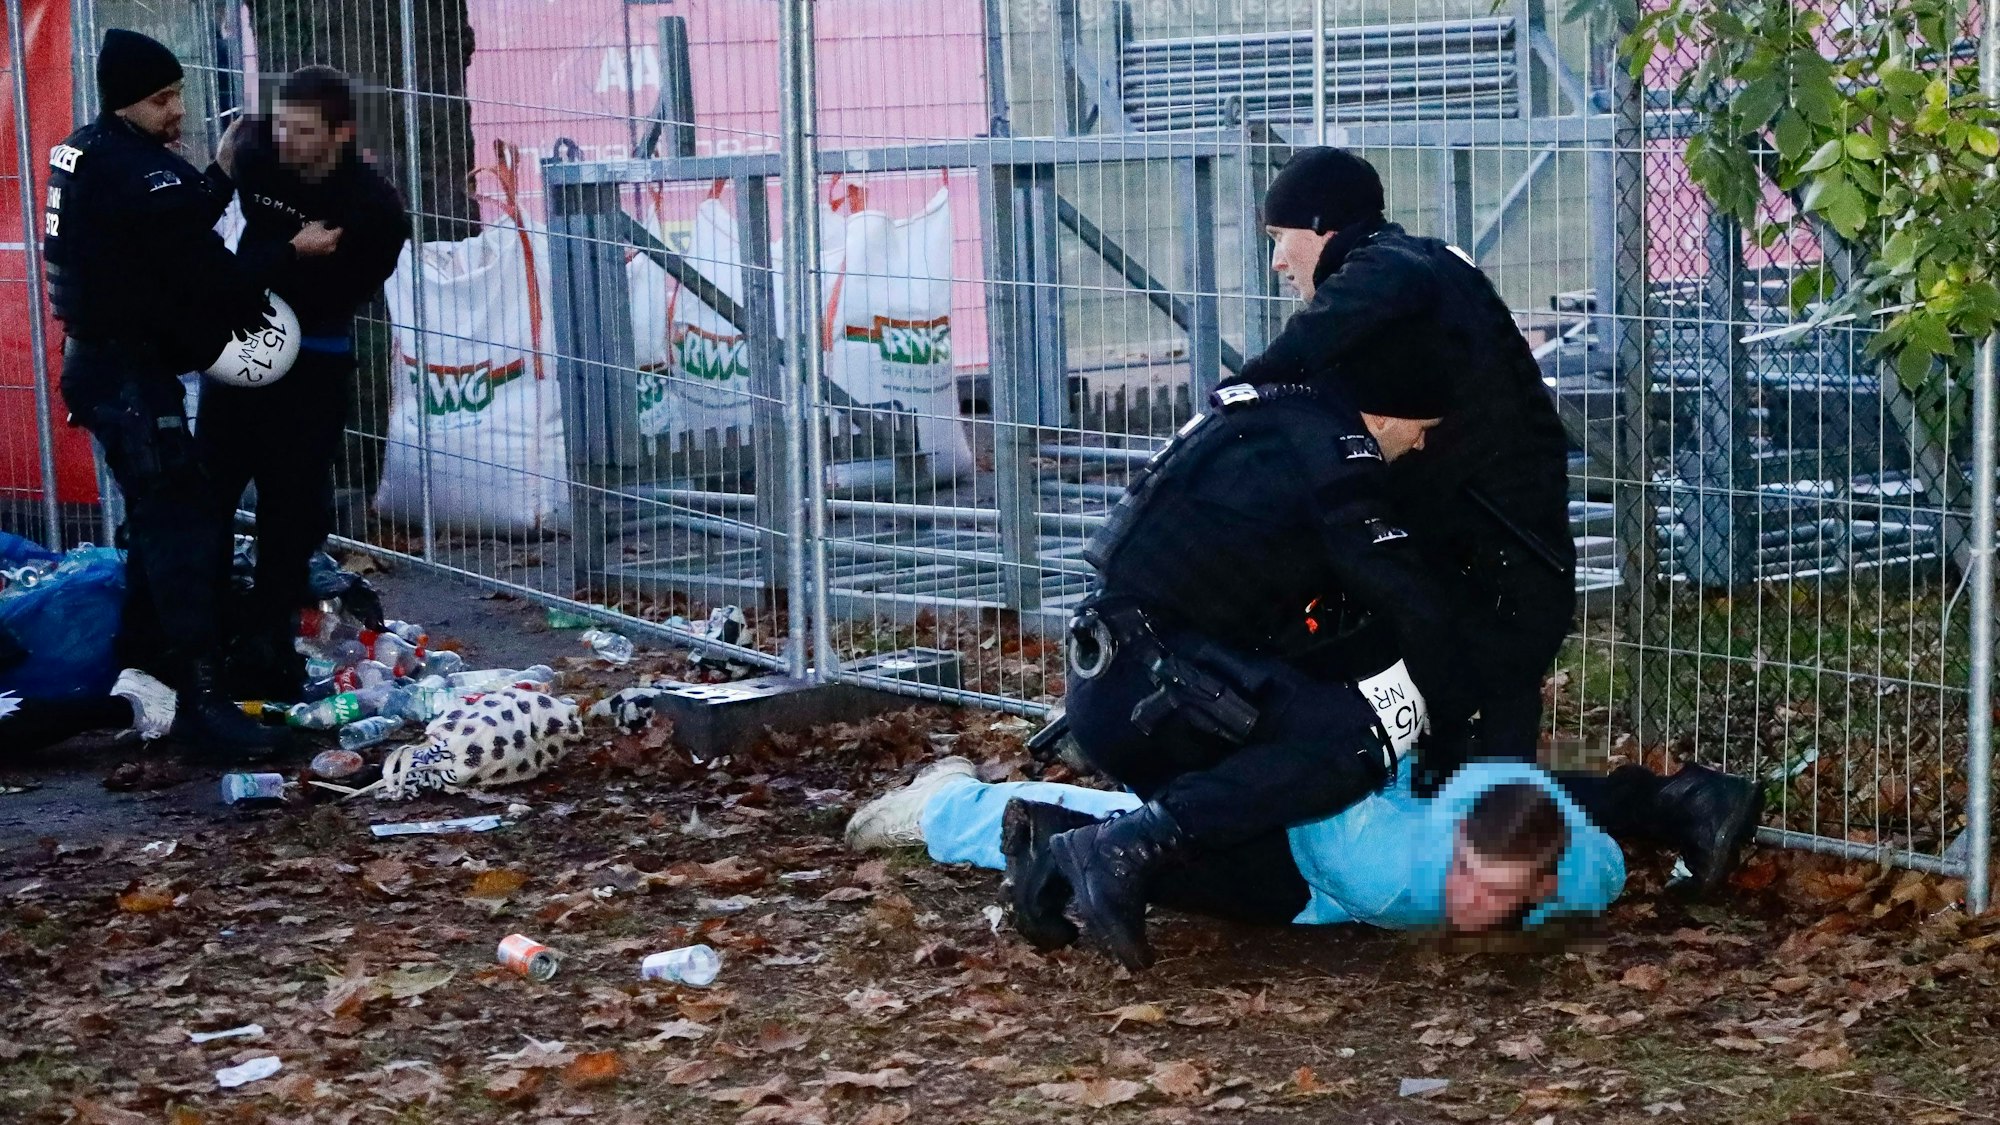 Polizeibeamte fixieren am Abend eine Person in der Nähe des Aachener Weihers auf dem Boden.